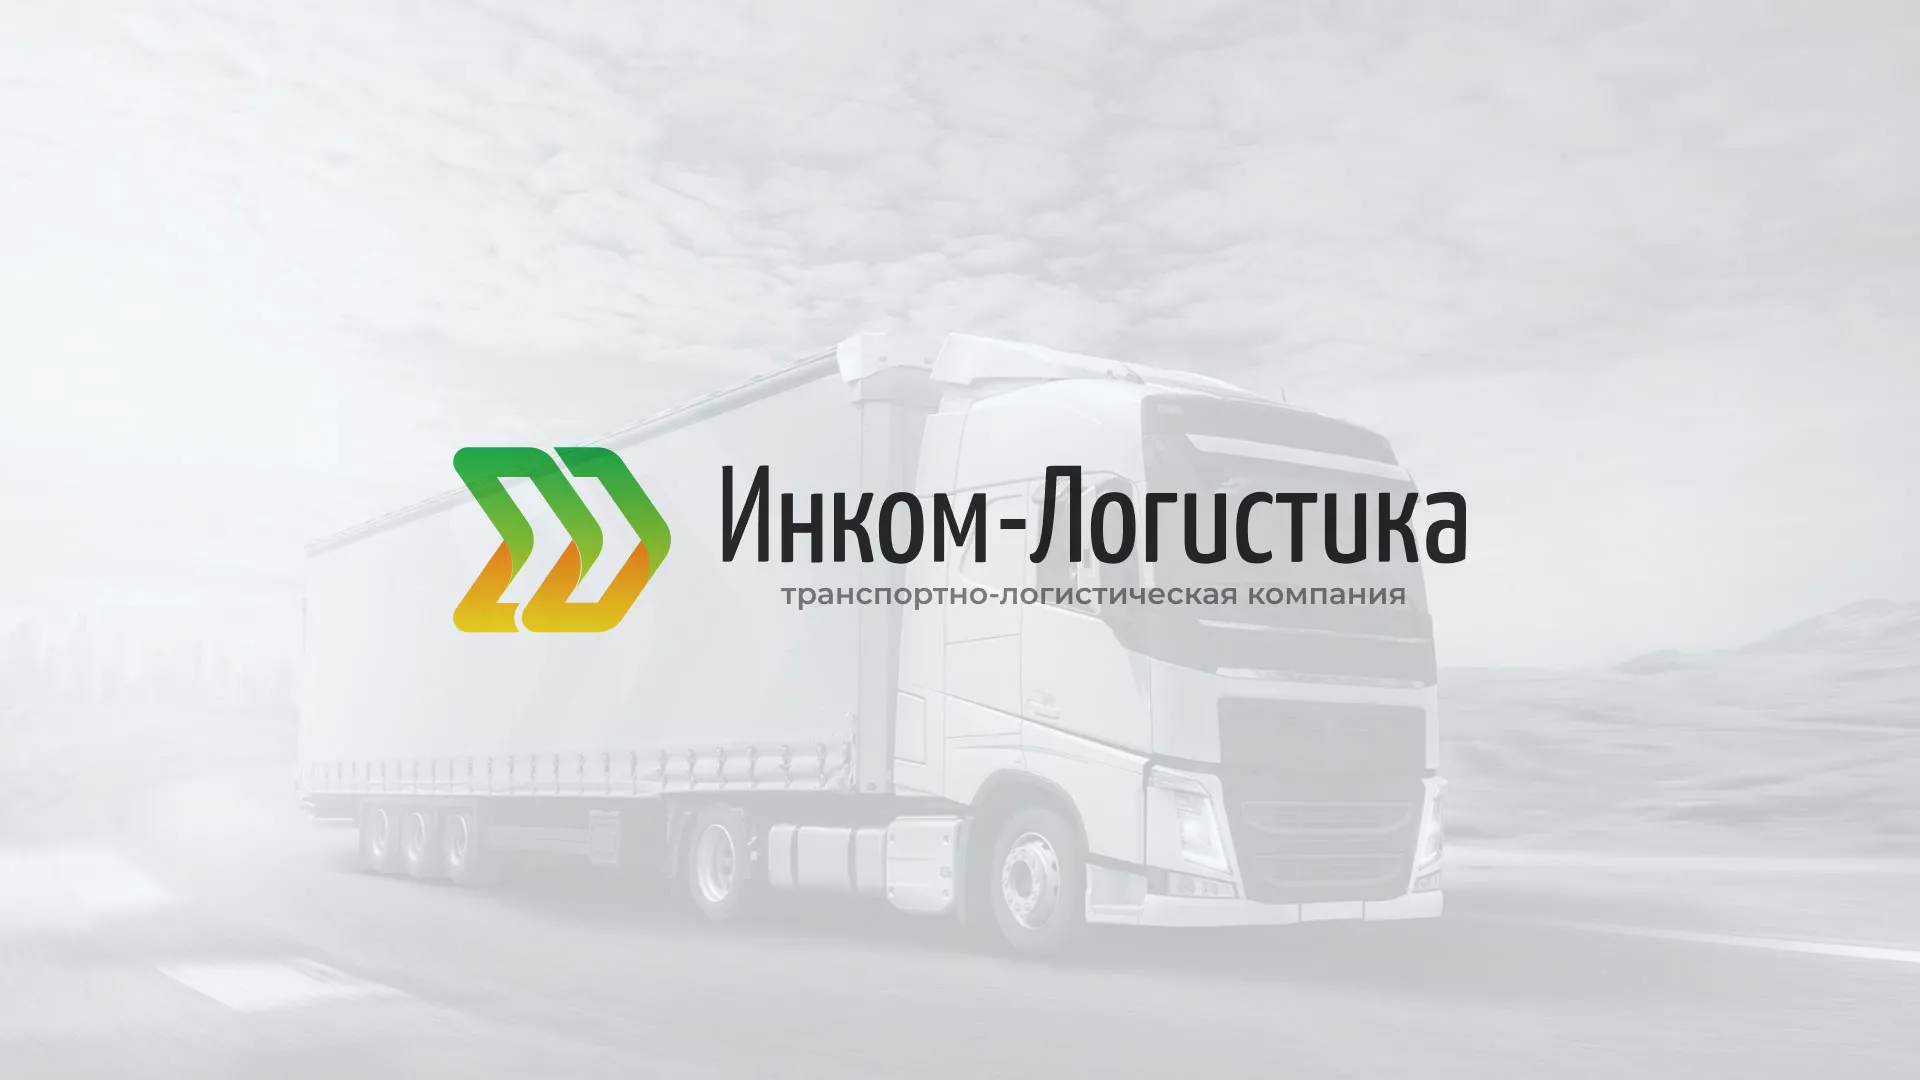 Разработка логотипа и сайта компании «Инком-Логистика» в Саратове